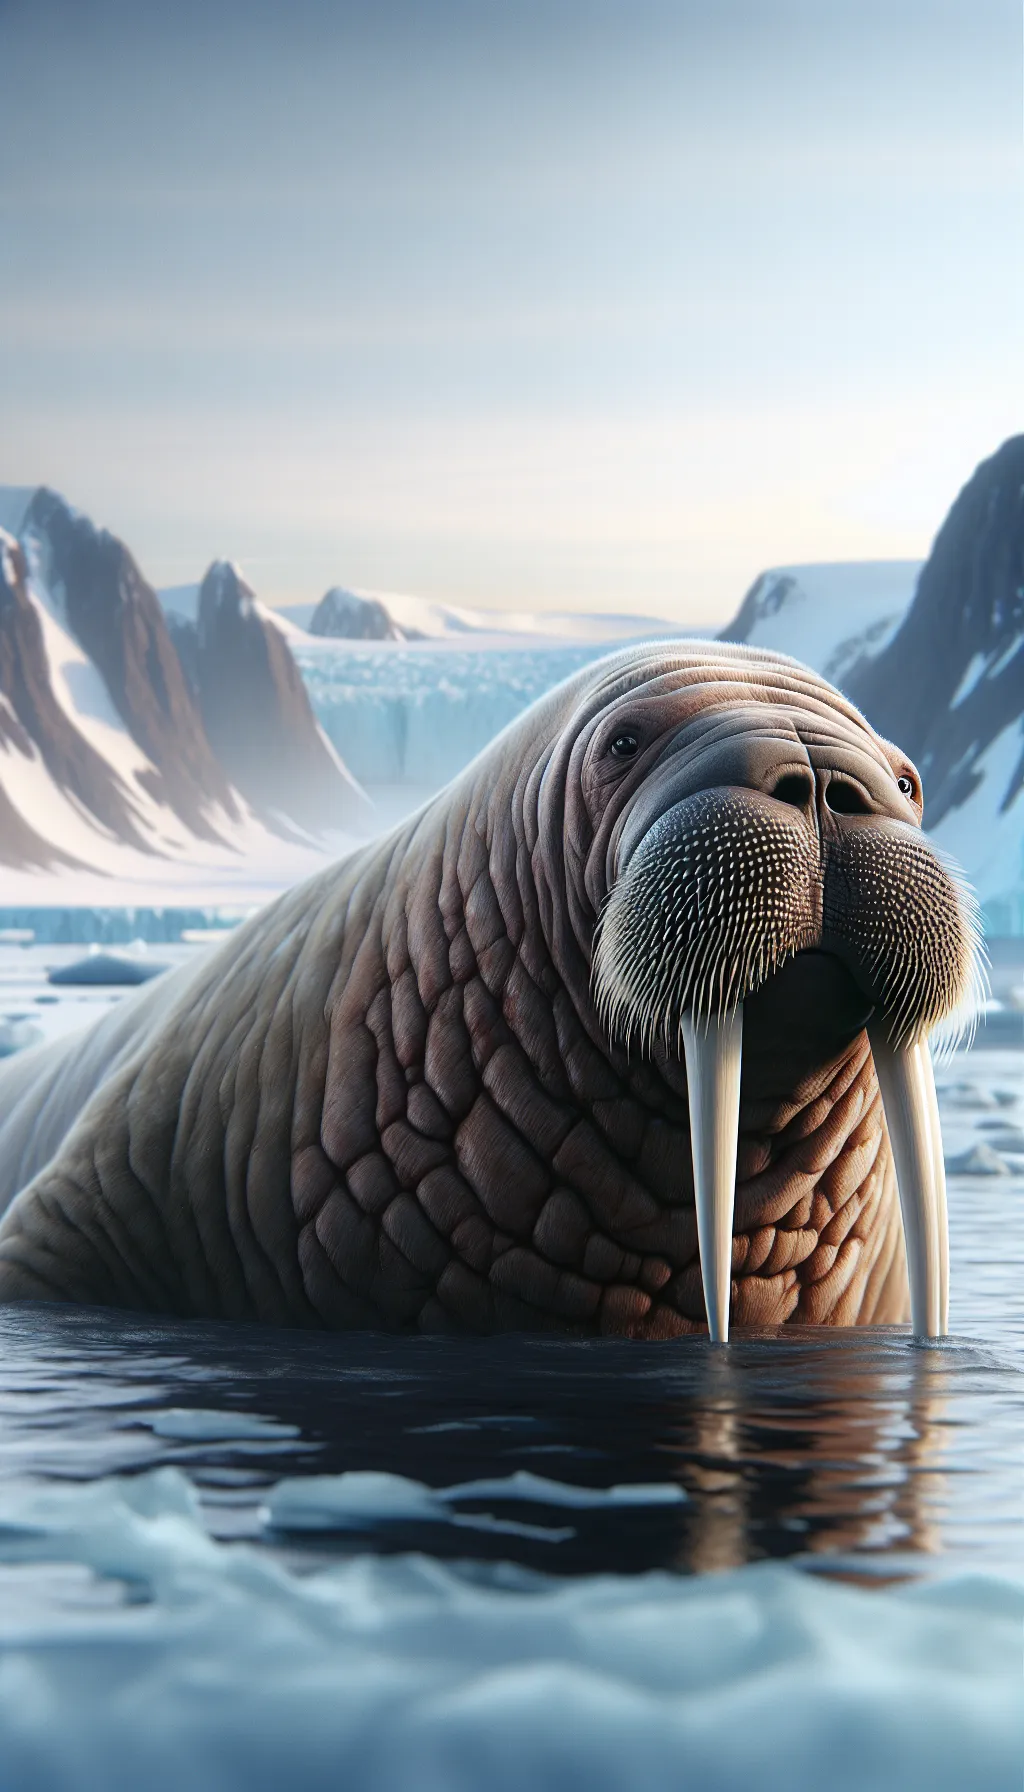 Walrus - Animal Matchup